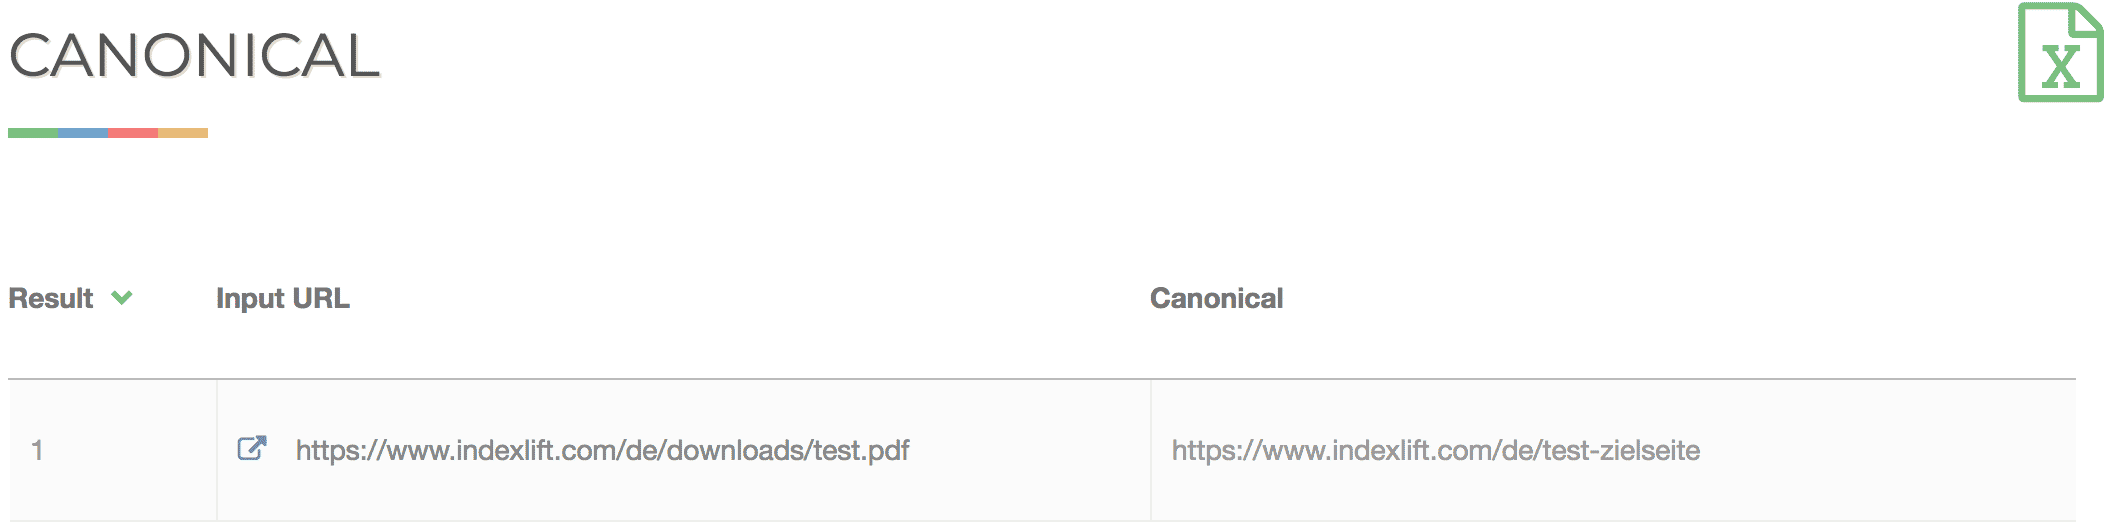 Canonical Tag URL Location Checker // seoreviewtools.com